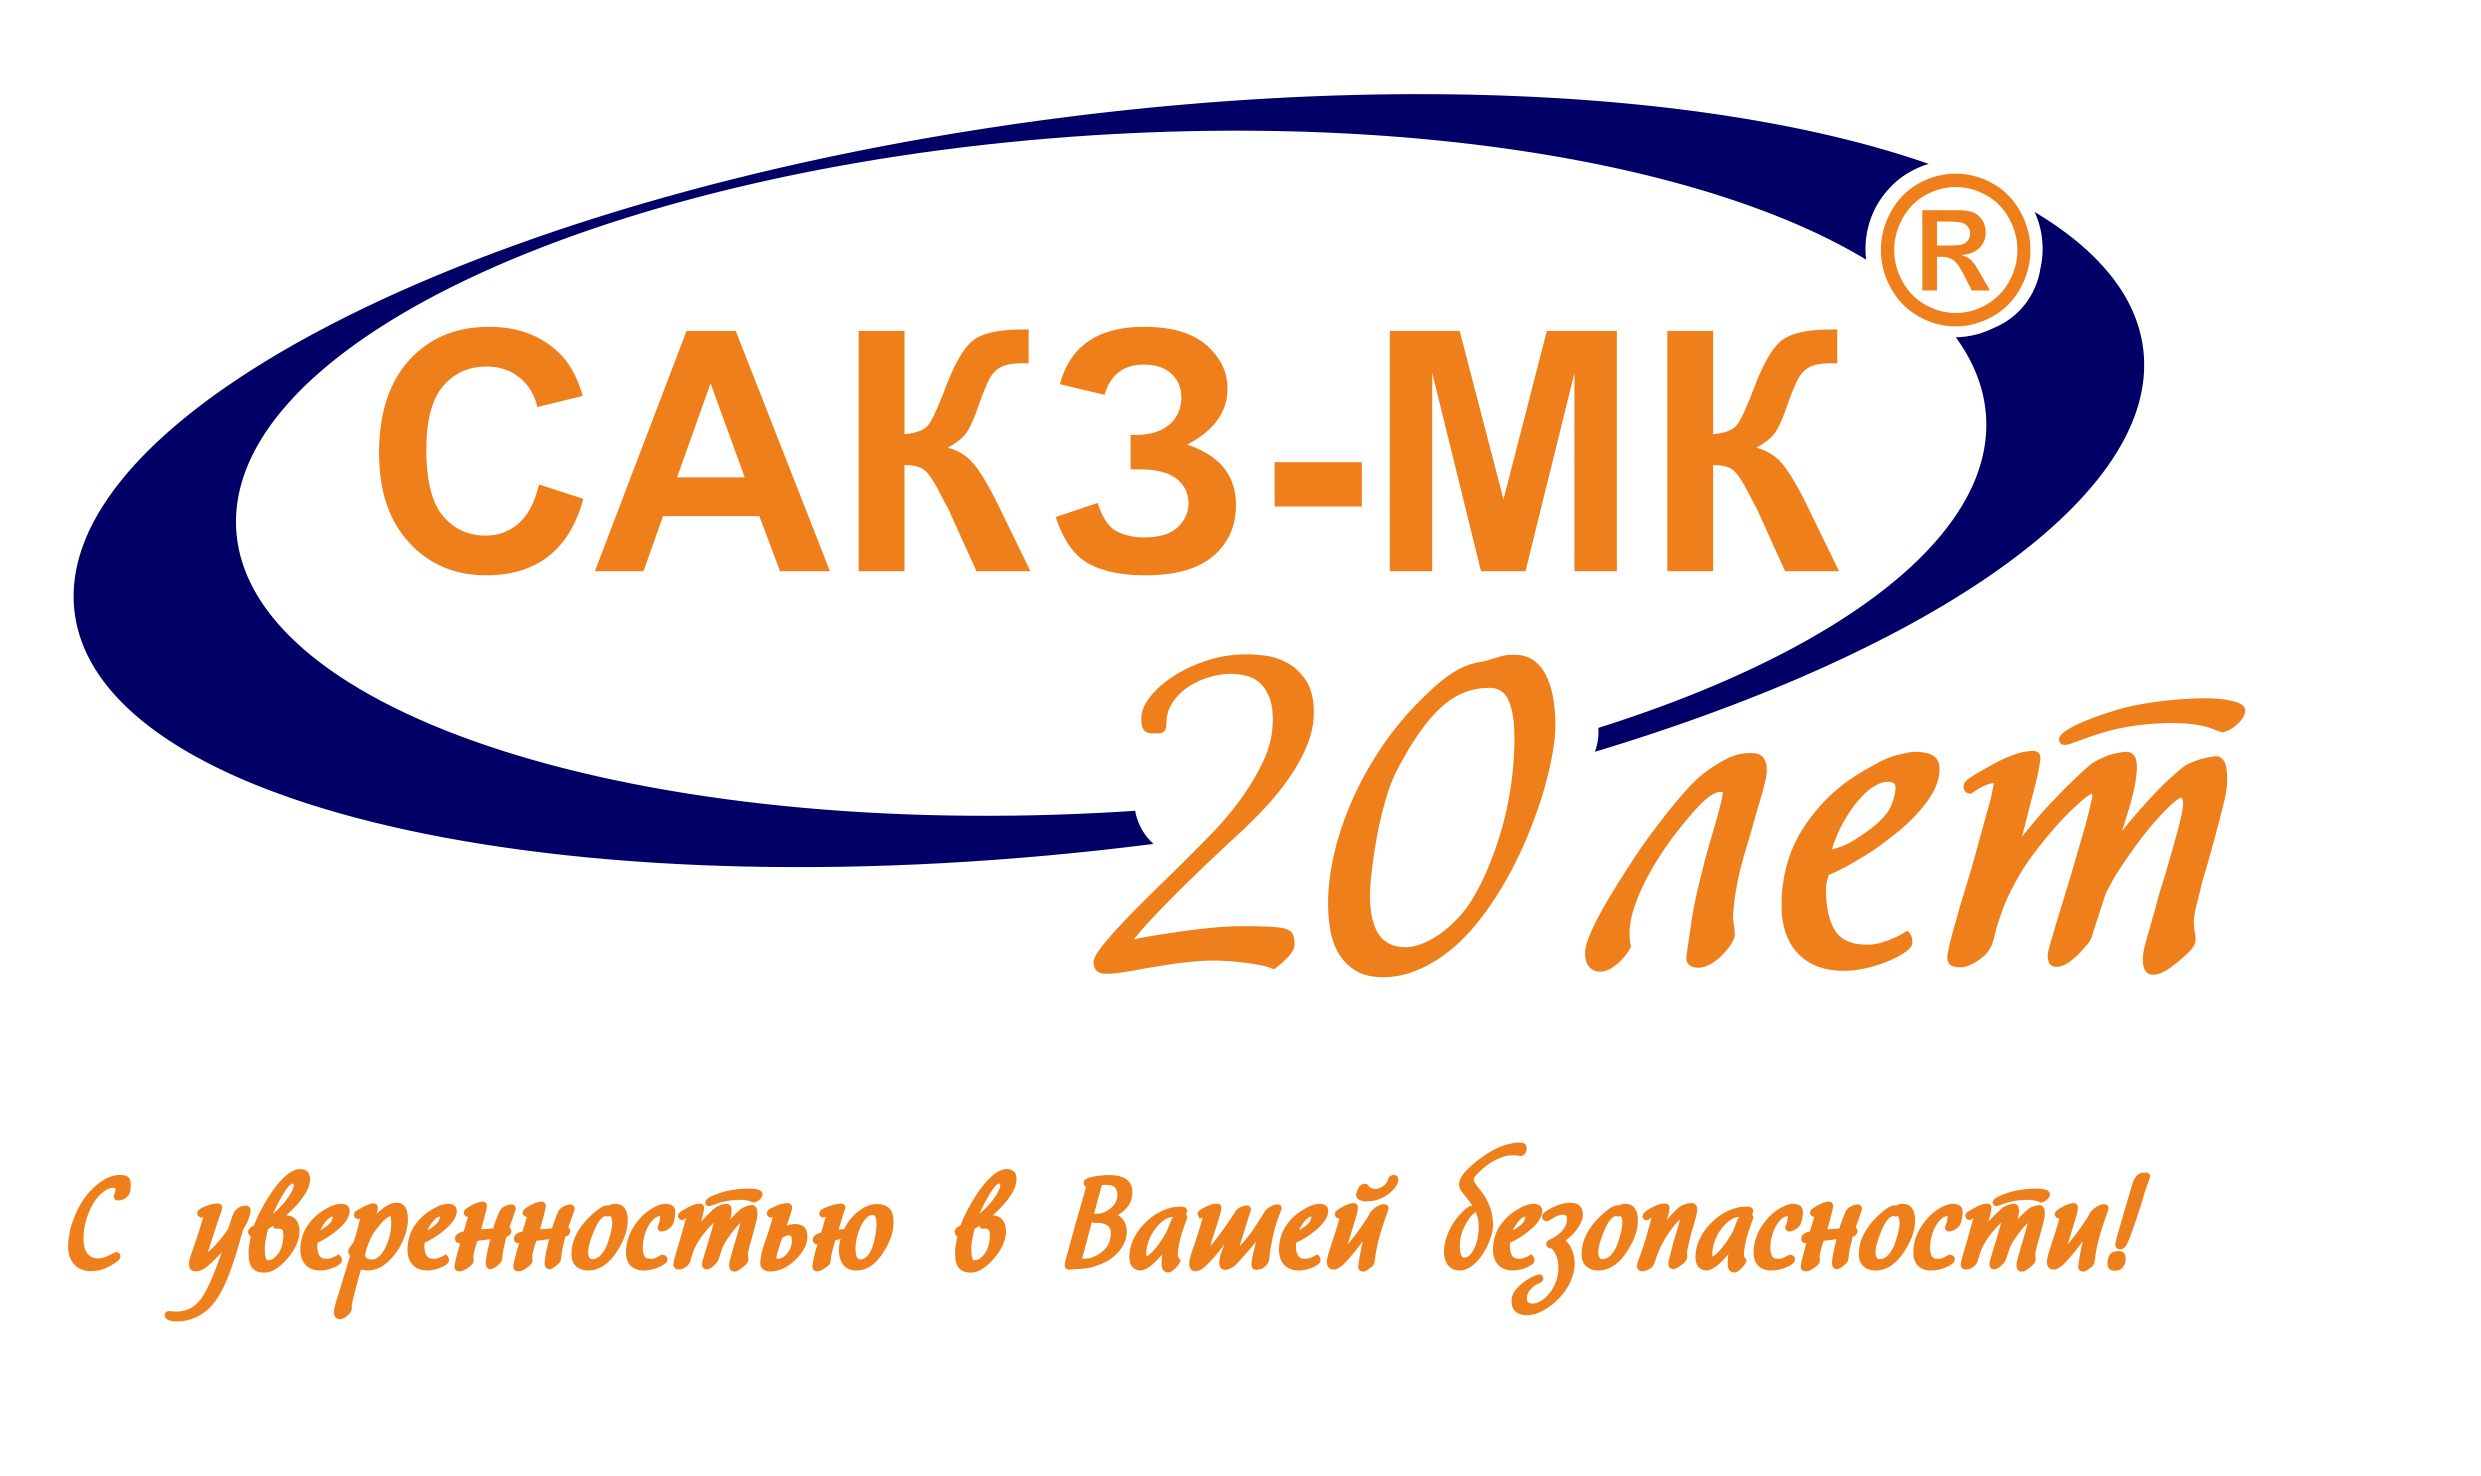 Логотип САКЗ-МК